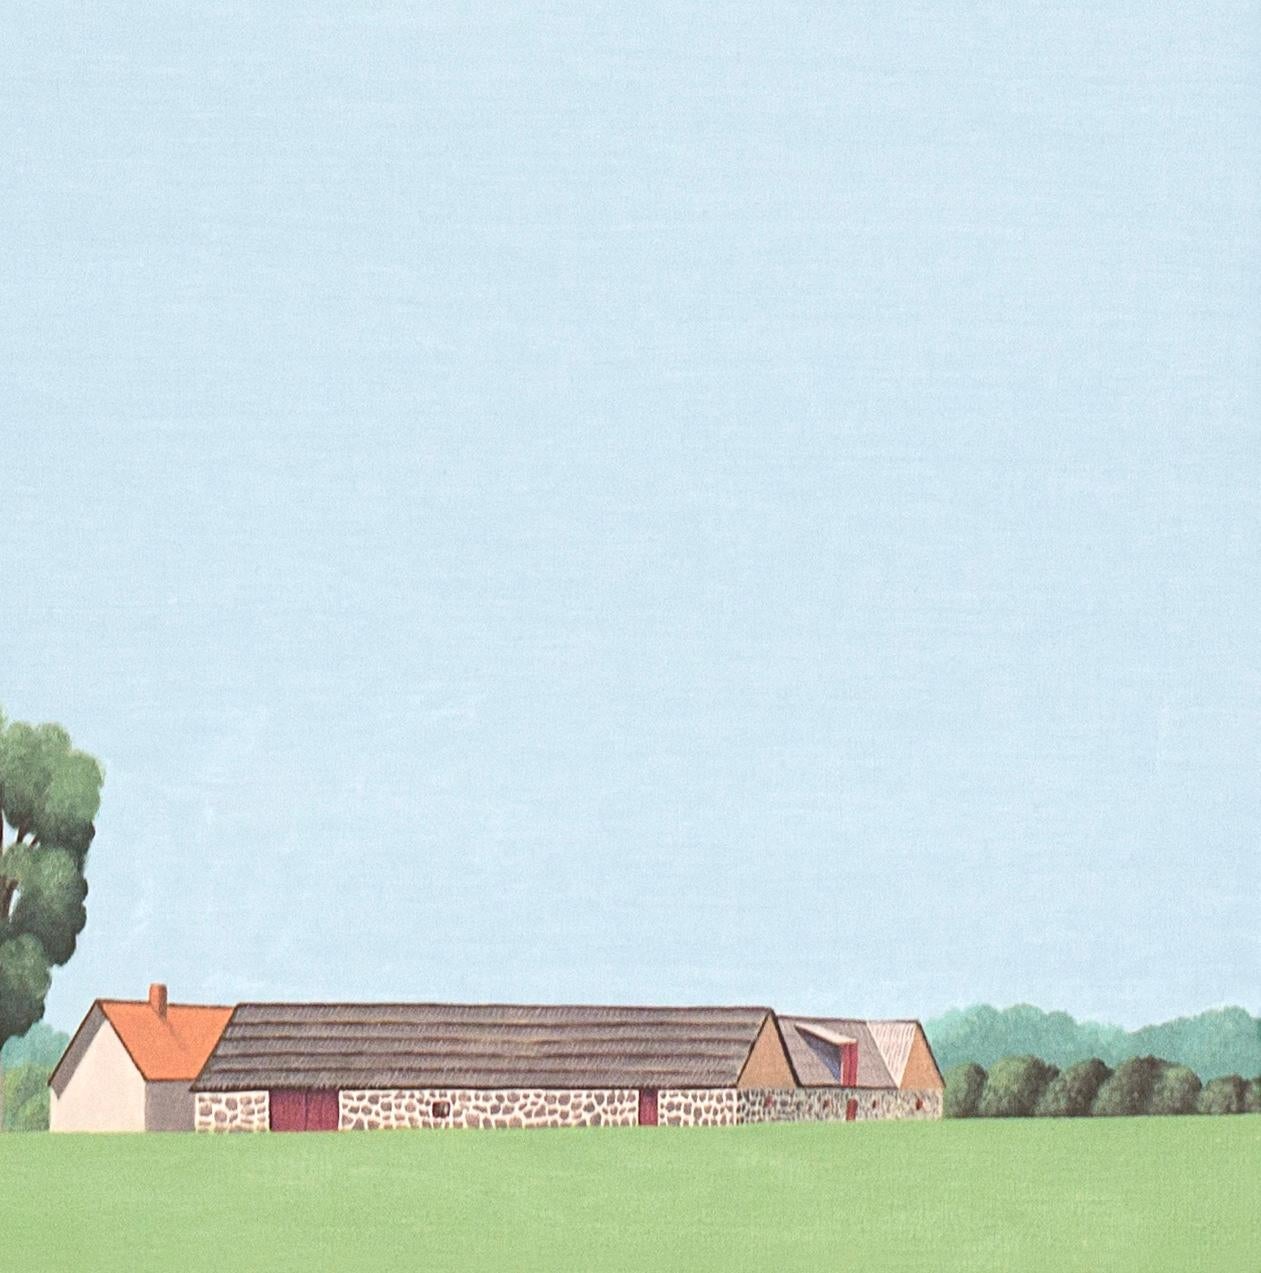 Dieses schöne Landschaftsgemälde von Jeroen Allart ist Teil seiner minimalistischen Landschaftsmalerei, die er in seinem Heimatland, den Niederlanden, angefertigt hat.

IA Farm steht vor Ihnen am Horizont. Eine Windmühle durchschneidet majestätisch